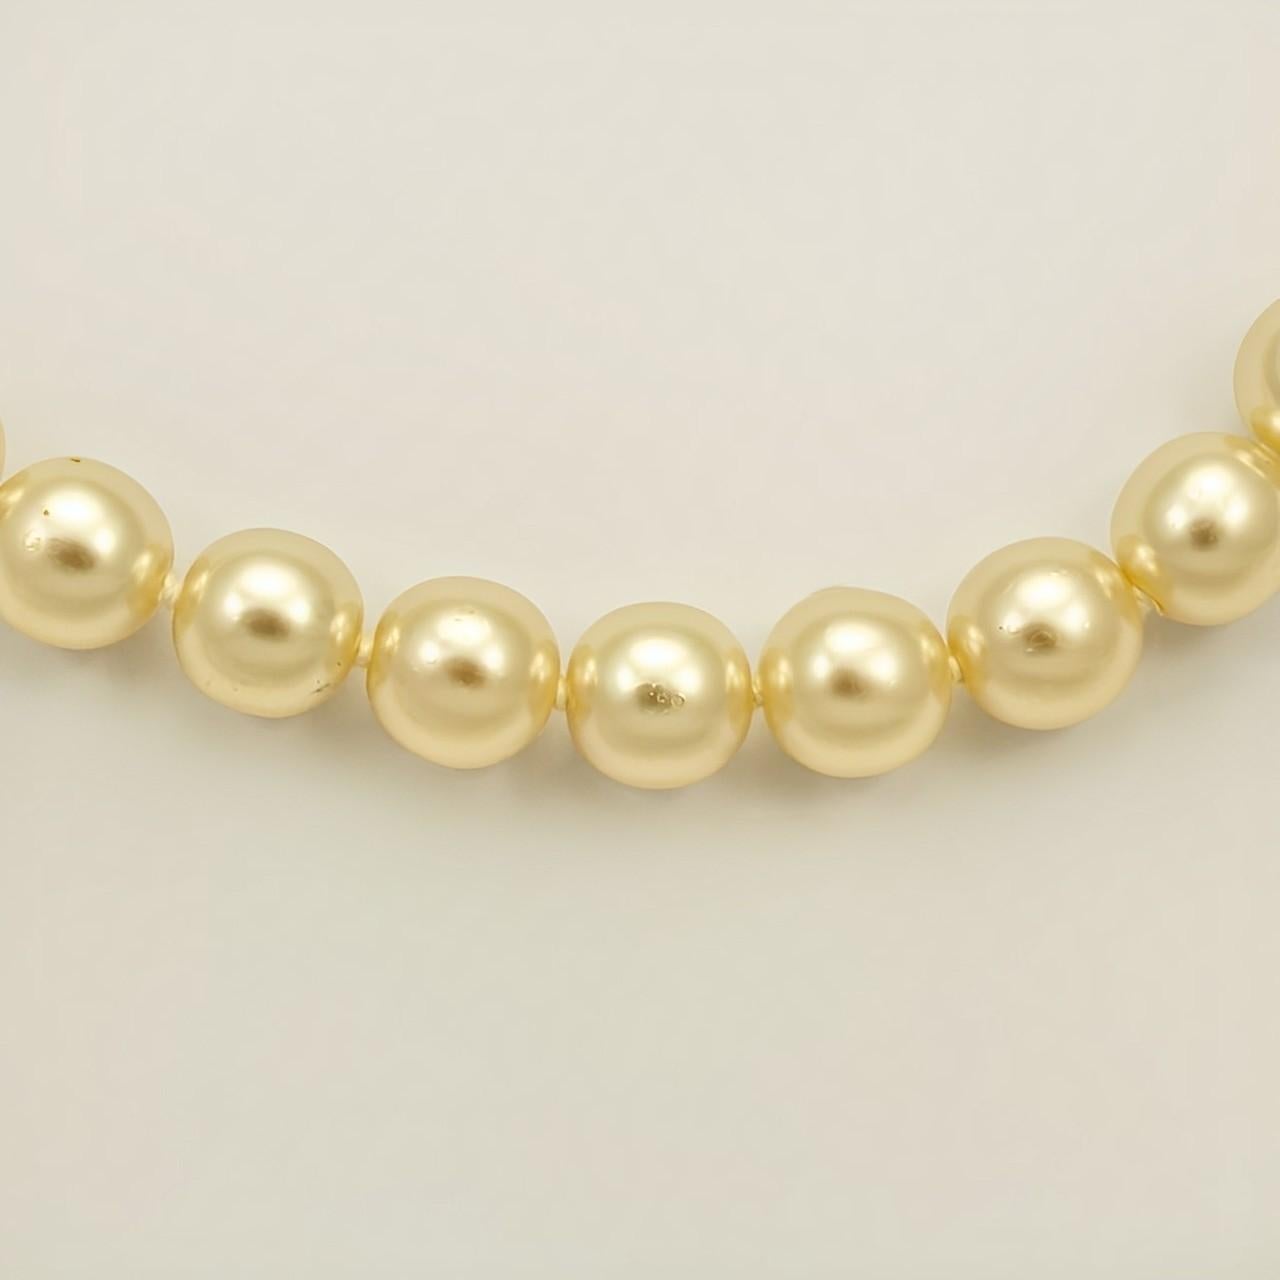 Magnifique collier de perles de verre crème, doté d'un fermoir rond à motif strié plaqué or, serti de trois perles. Les perles lustrées sont nouées entre chaque perle. Longueur 43,5 cm / 17,1 pouces. Les perles mesurent 9 mm. Le collier est en très